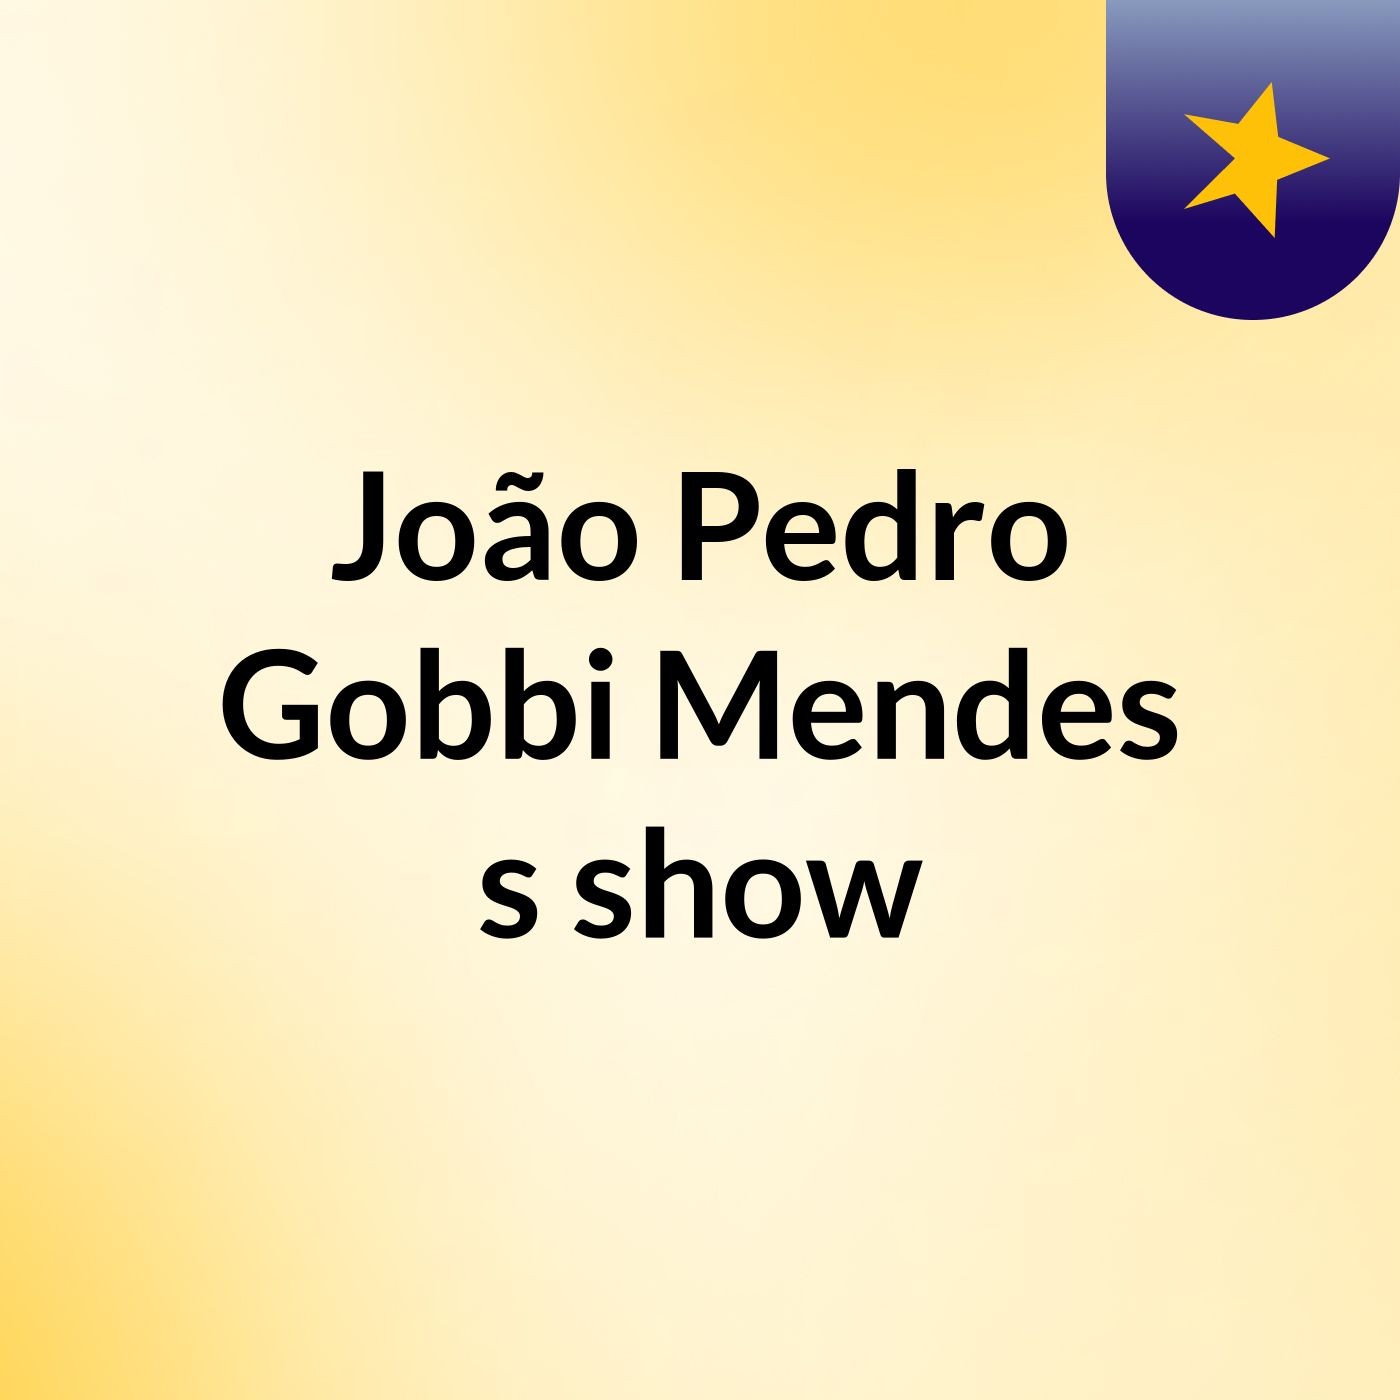 João Pedro Gobbi Mendes's show